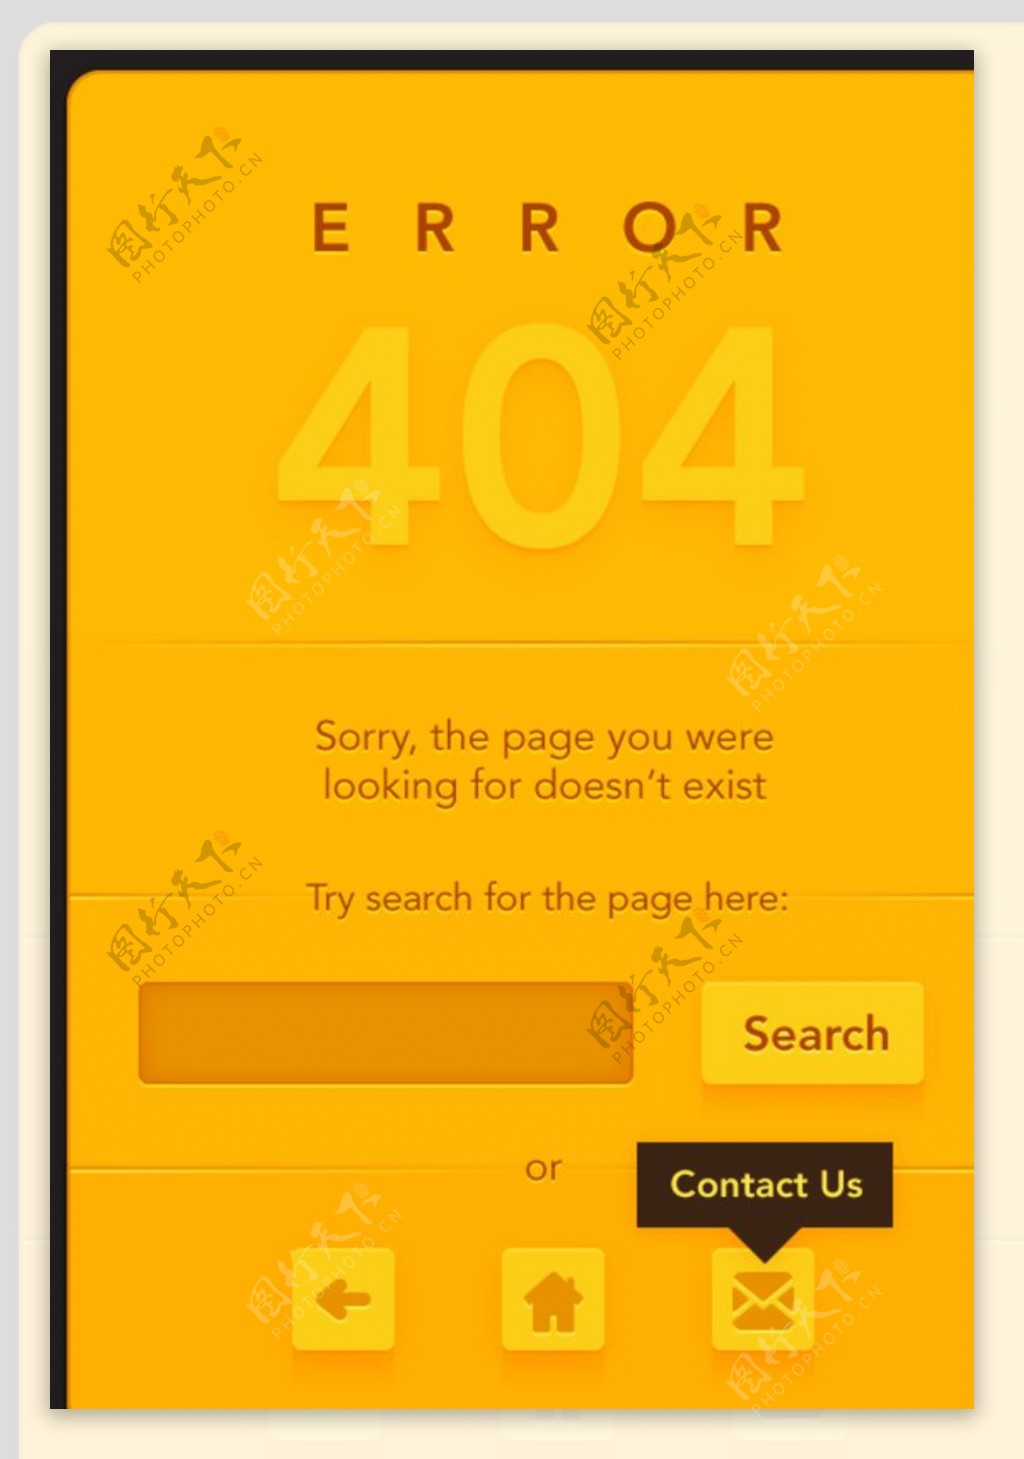 网页404出错页面图片